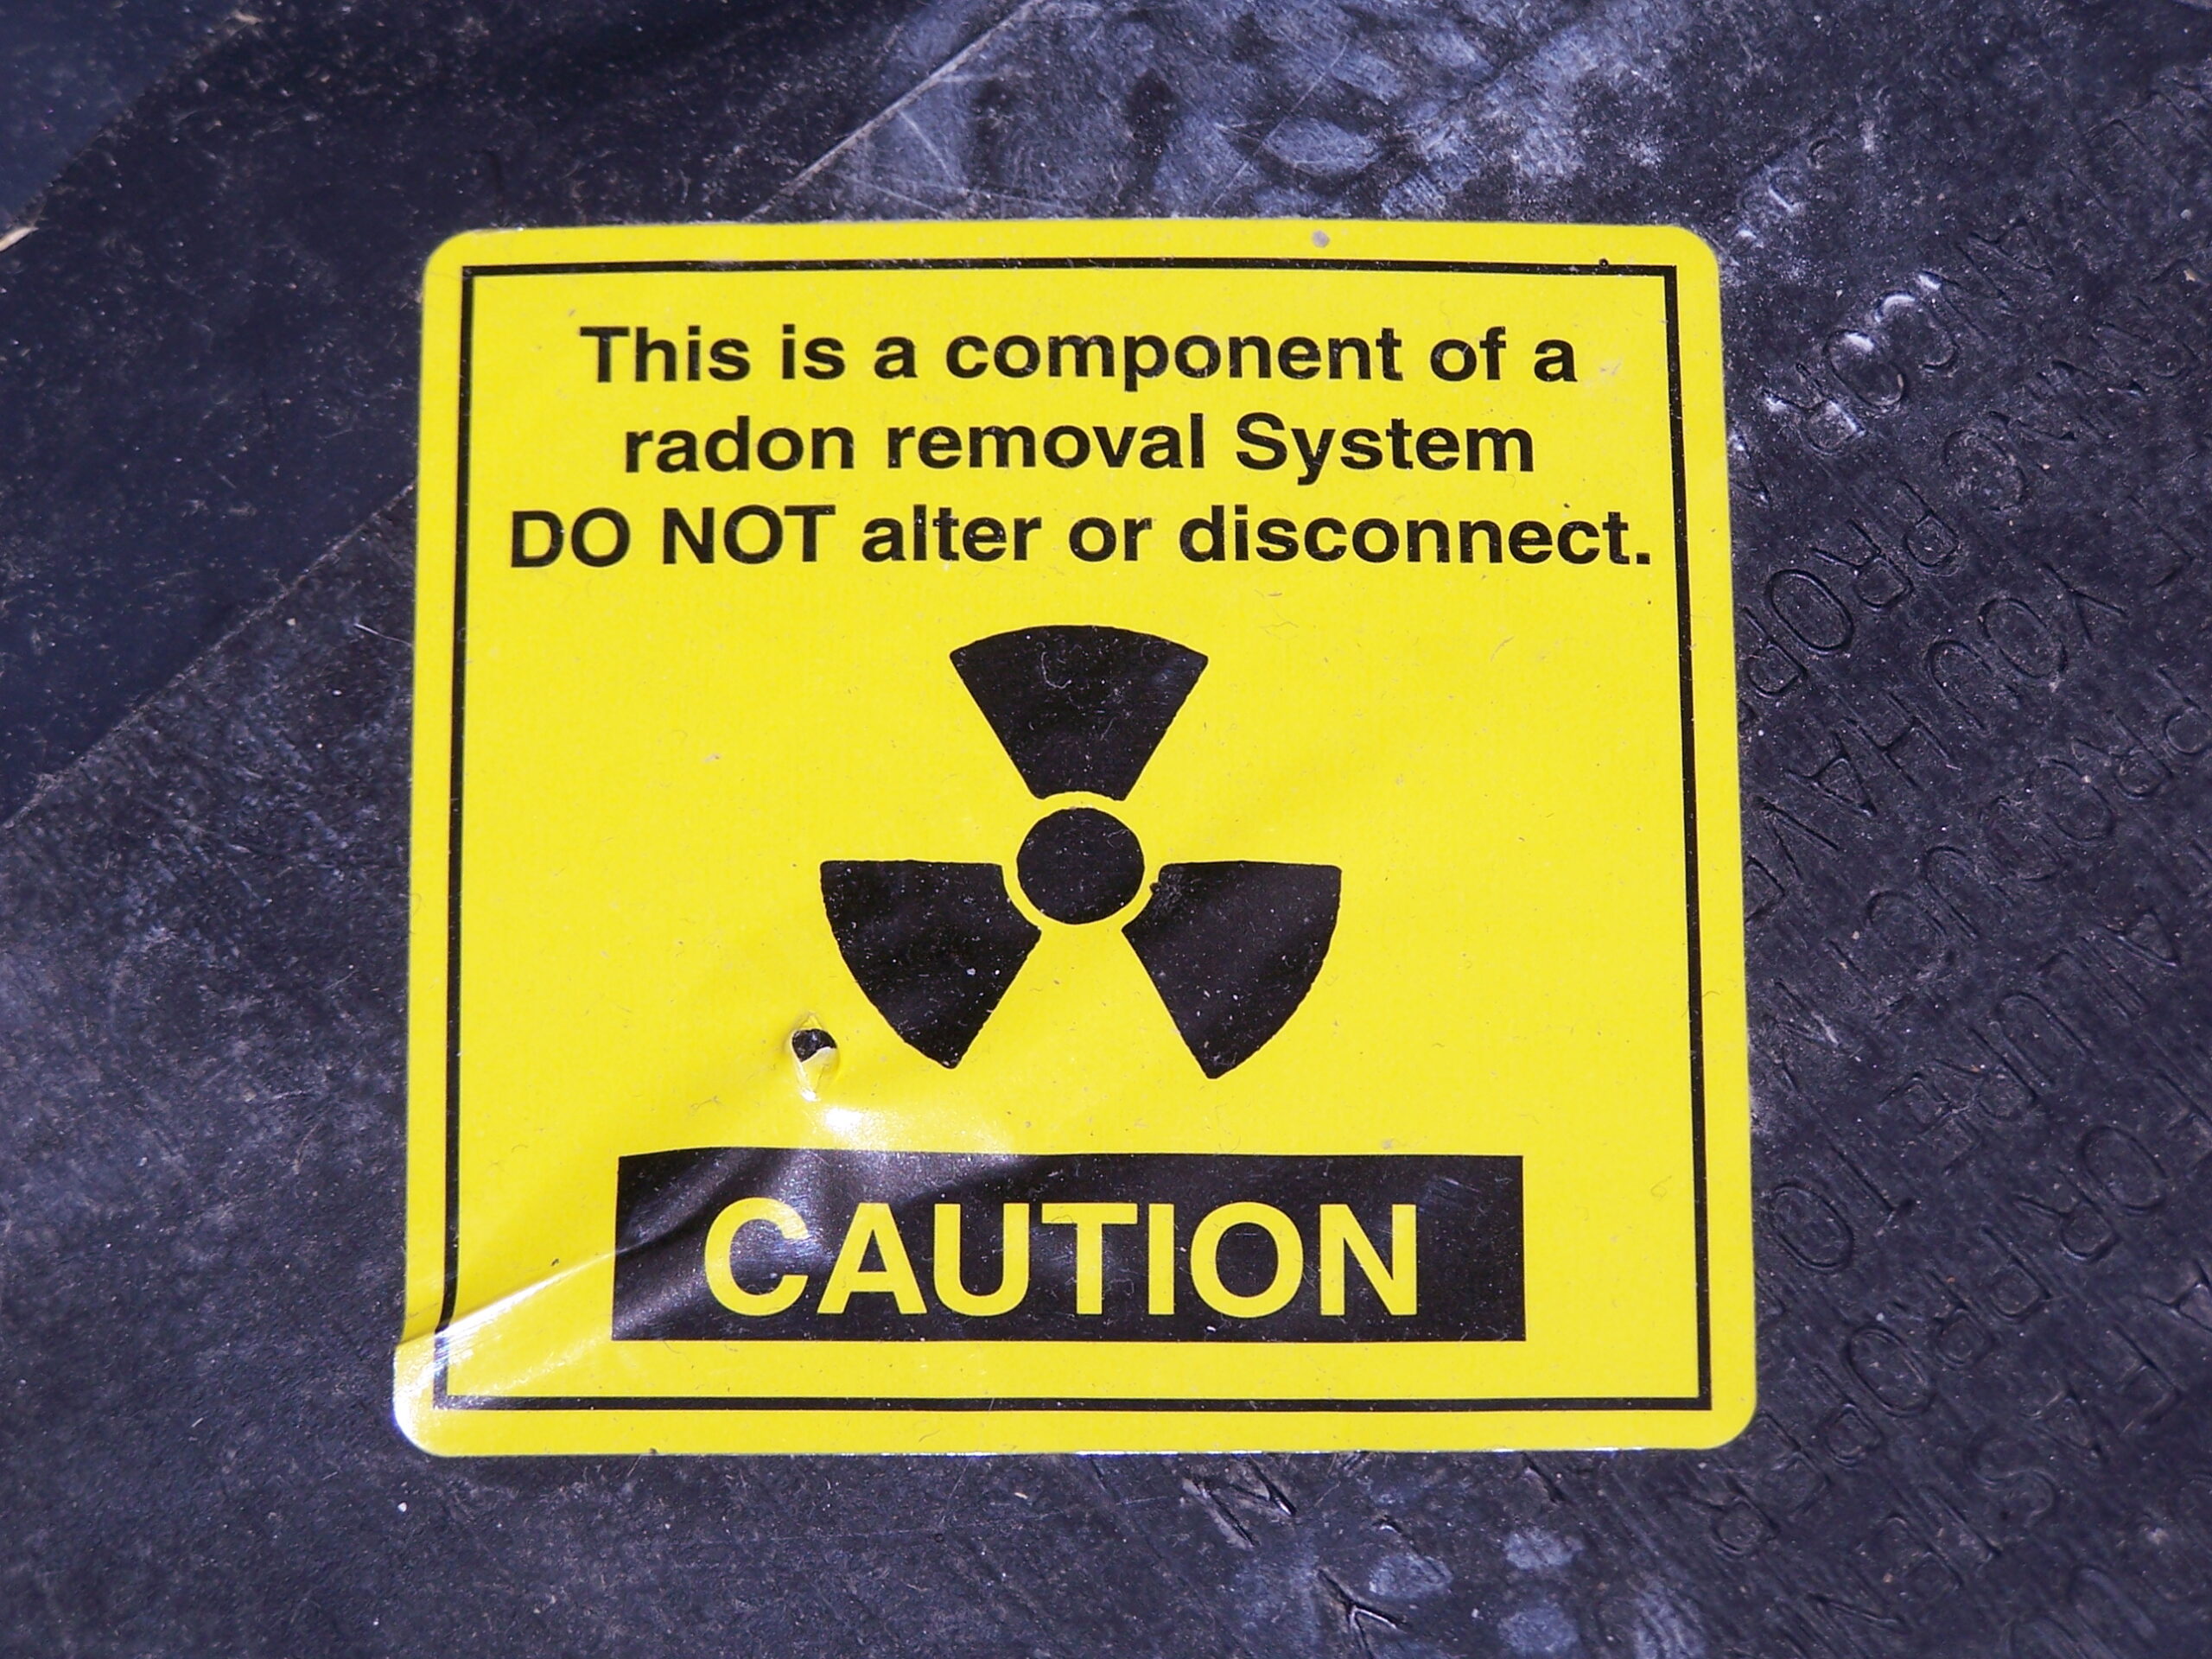 Radon warning label